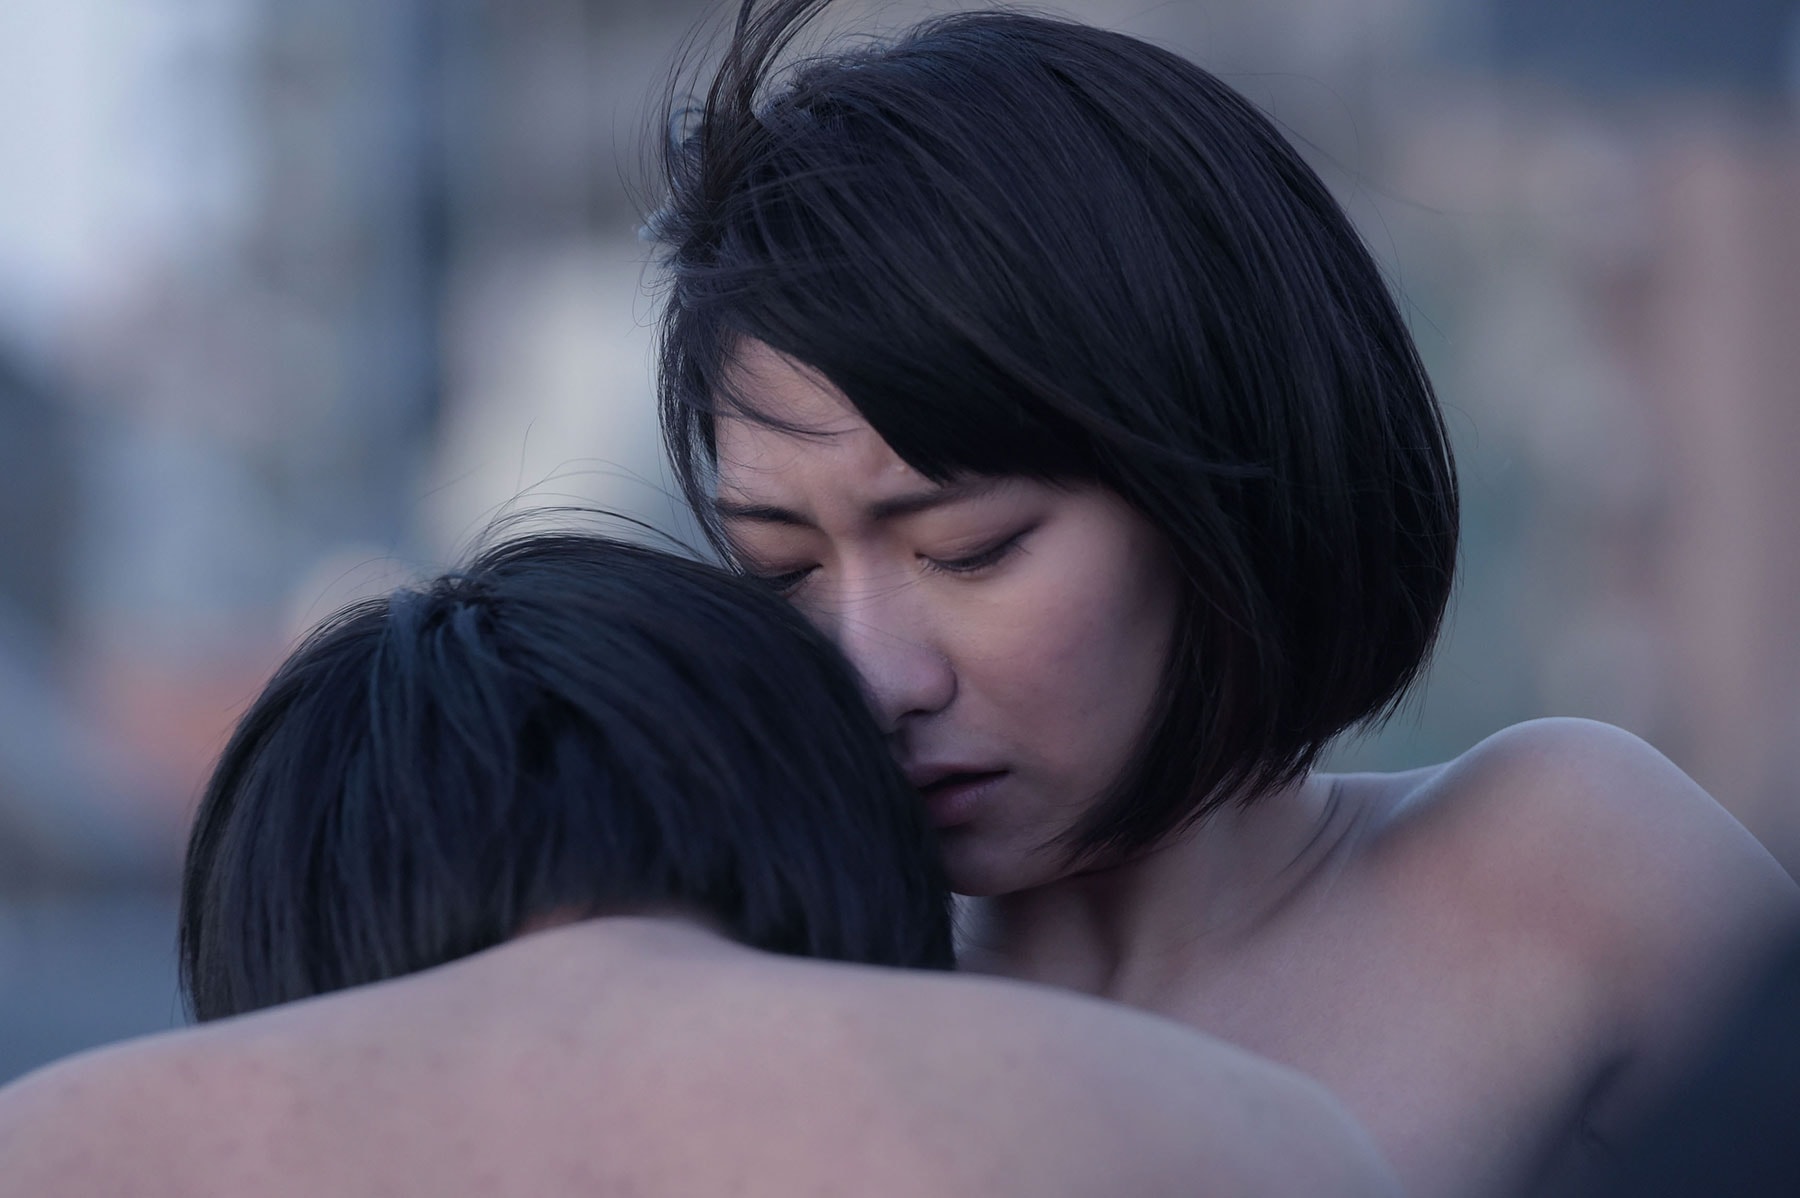 《凶惡》導演白石和彌新作《雌貓們之夜》將於香港上映